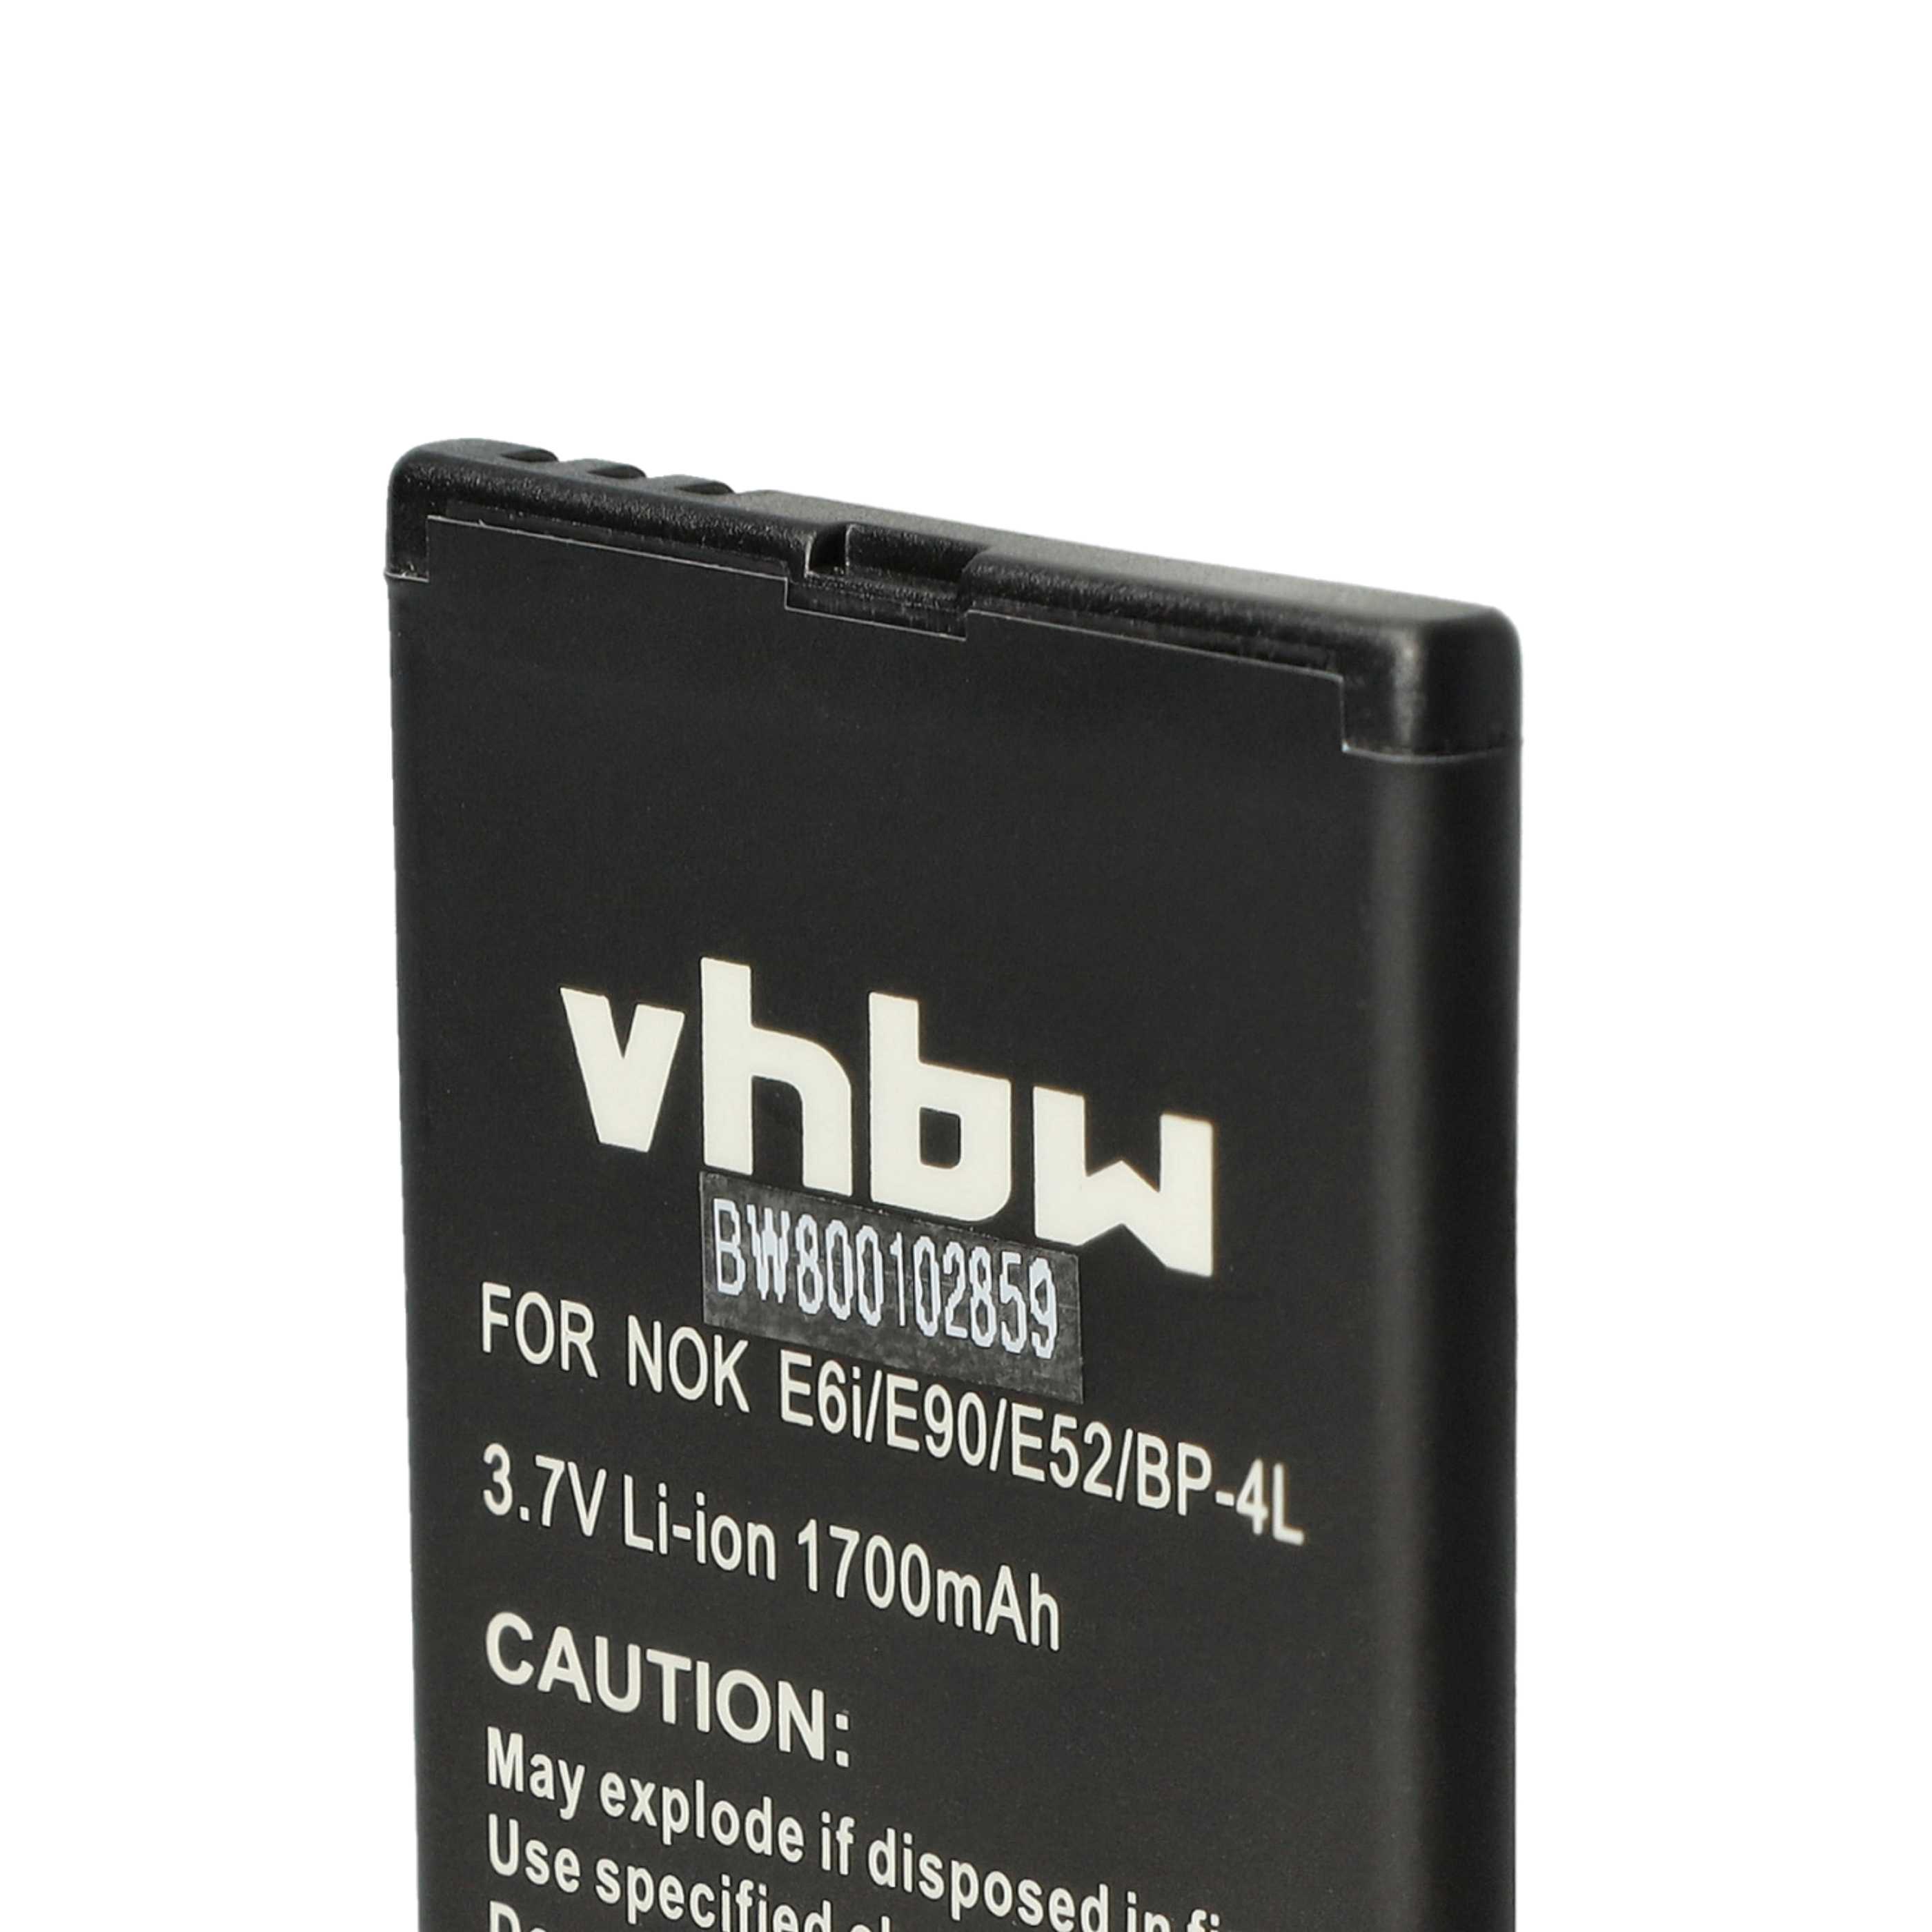 Batterie remplace Aligator D243, BL-6900, BP-140, A800BAL pour téléphone portable - 1700mAh, 3,7V, Li-ion